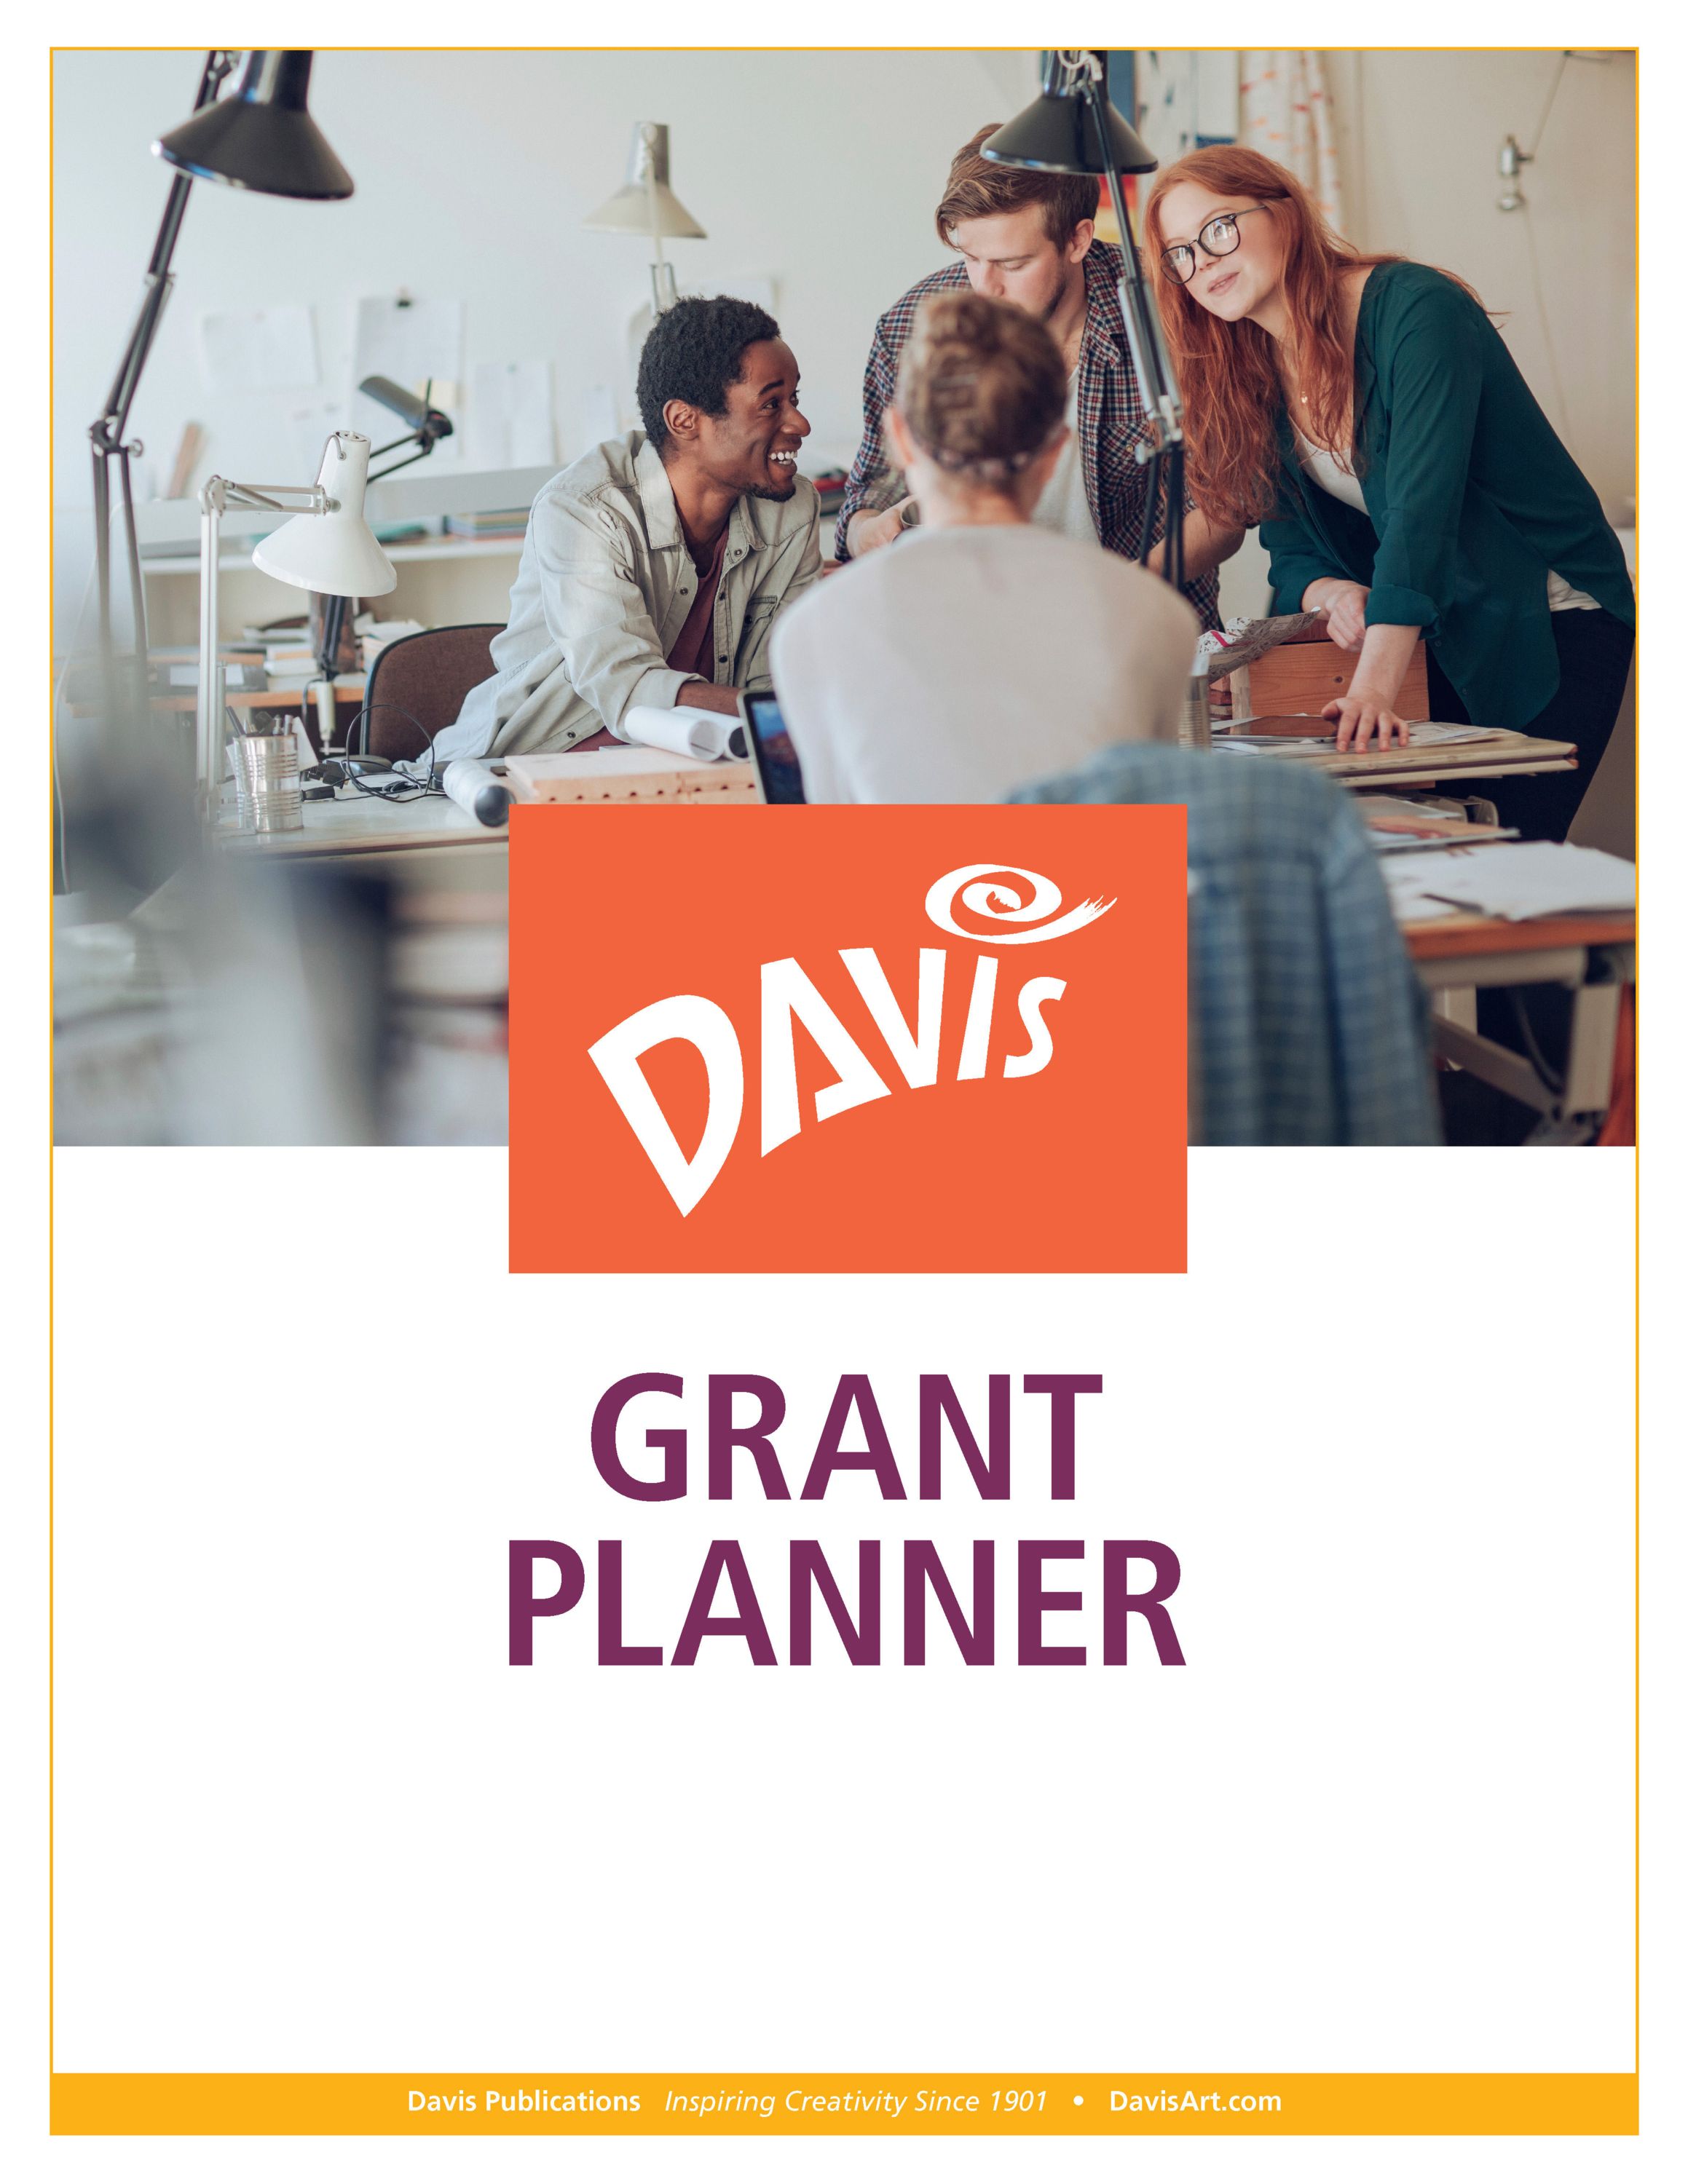 Davis Grant Planner